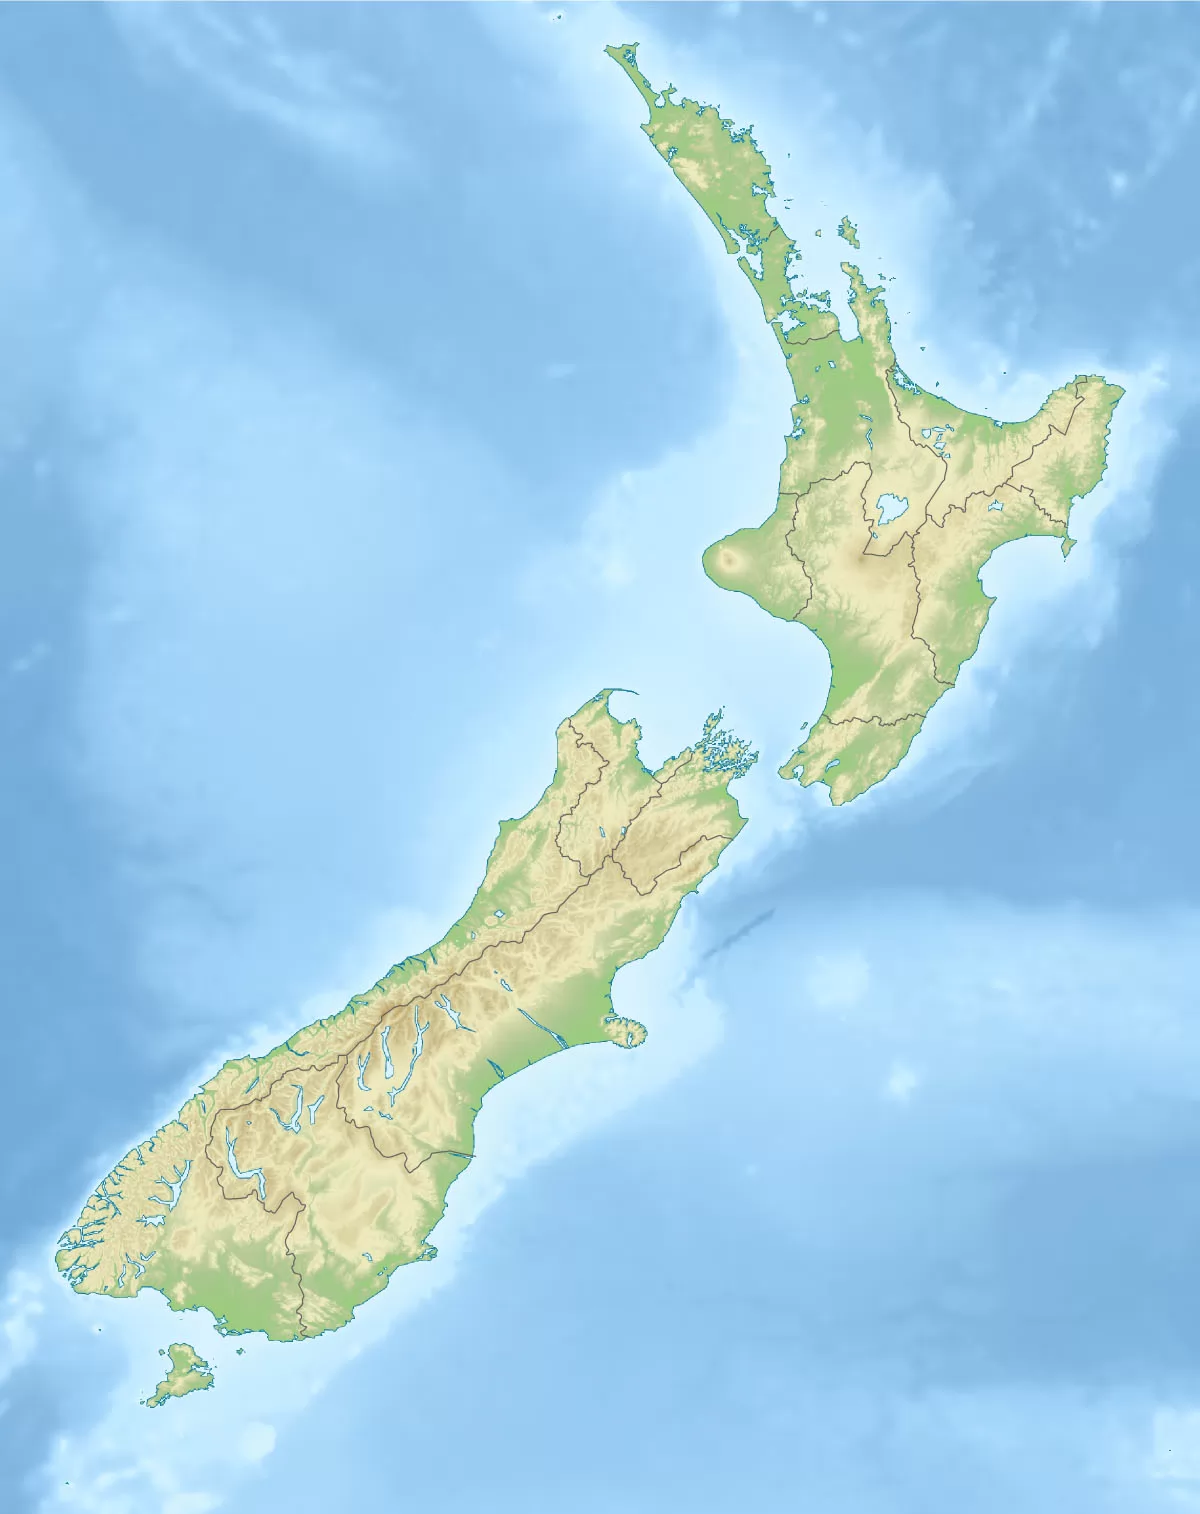 新西兰高清中文全图_新西兰地图库